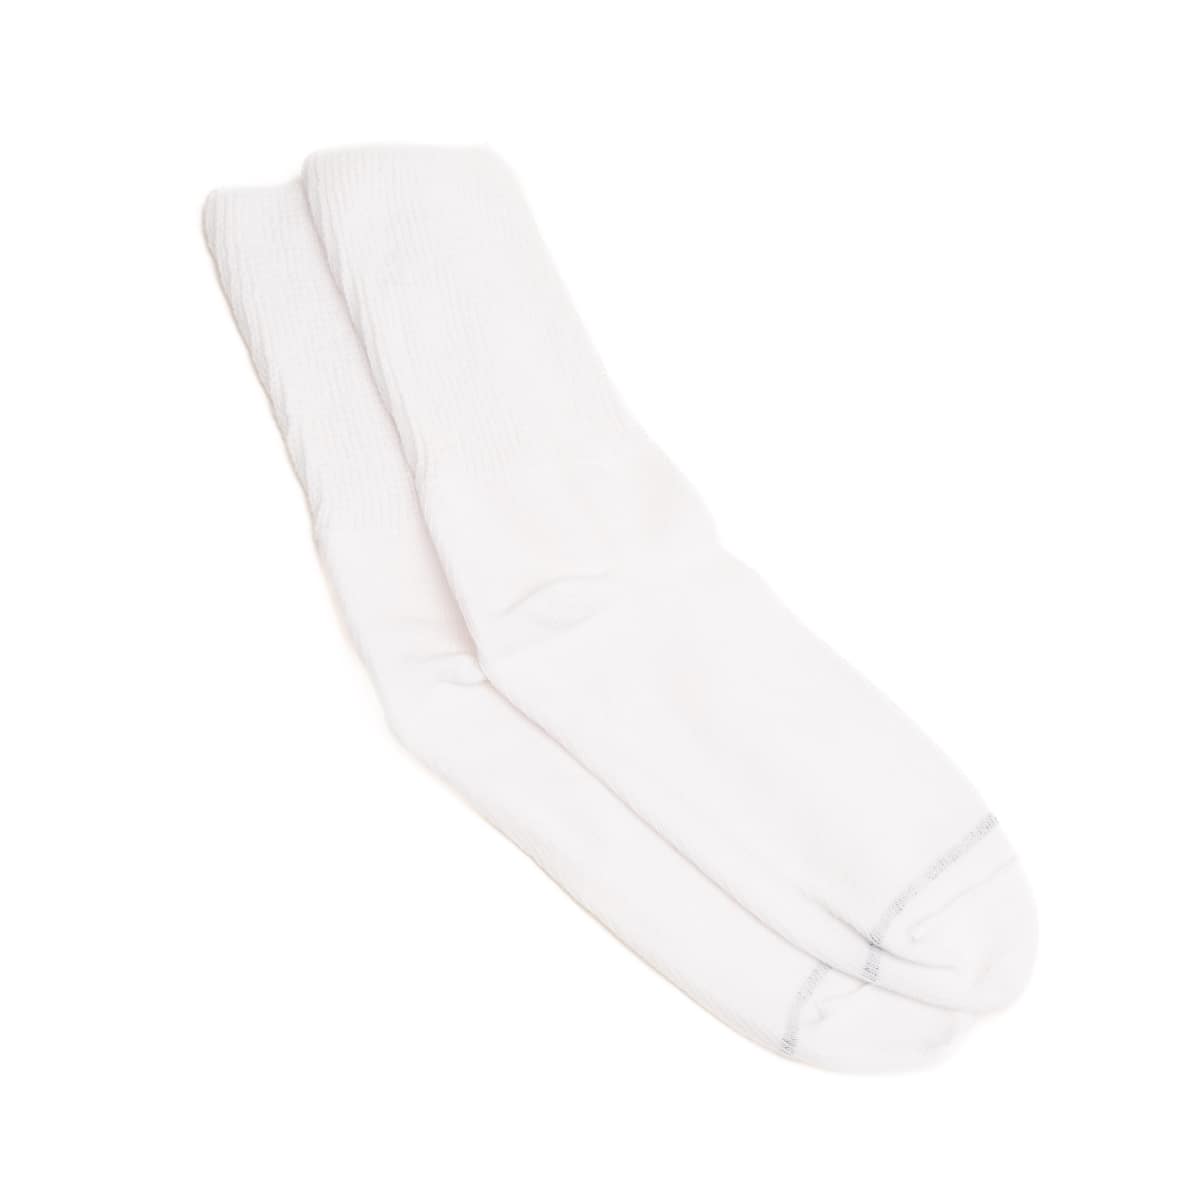 white crew socks - white mid calf socks